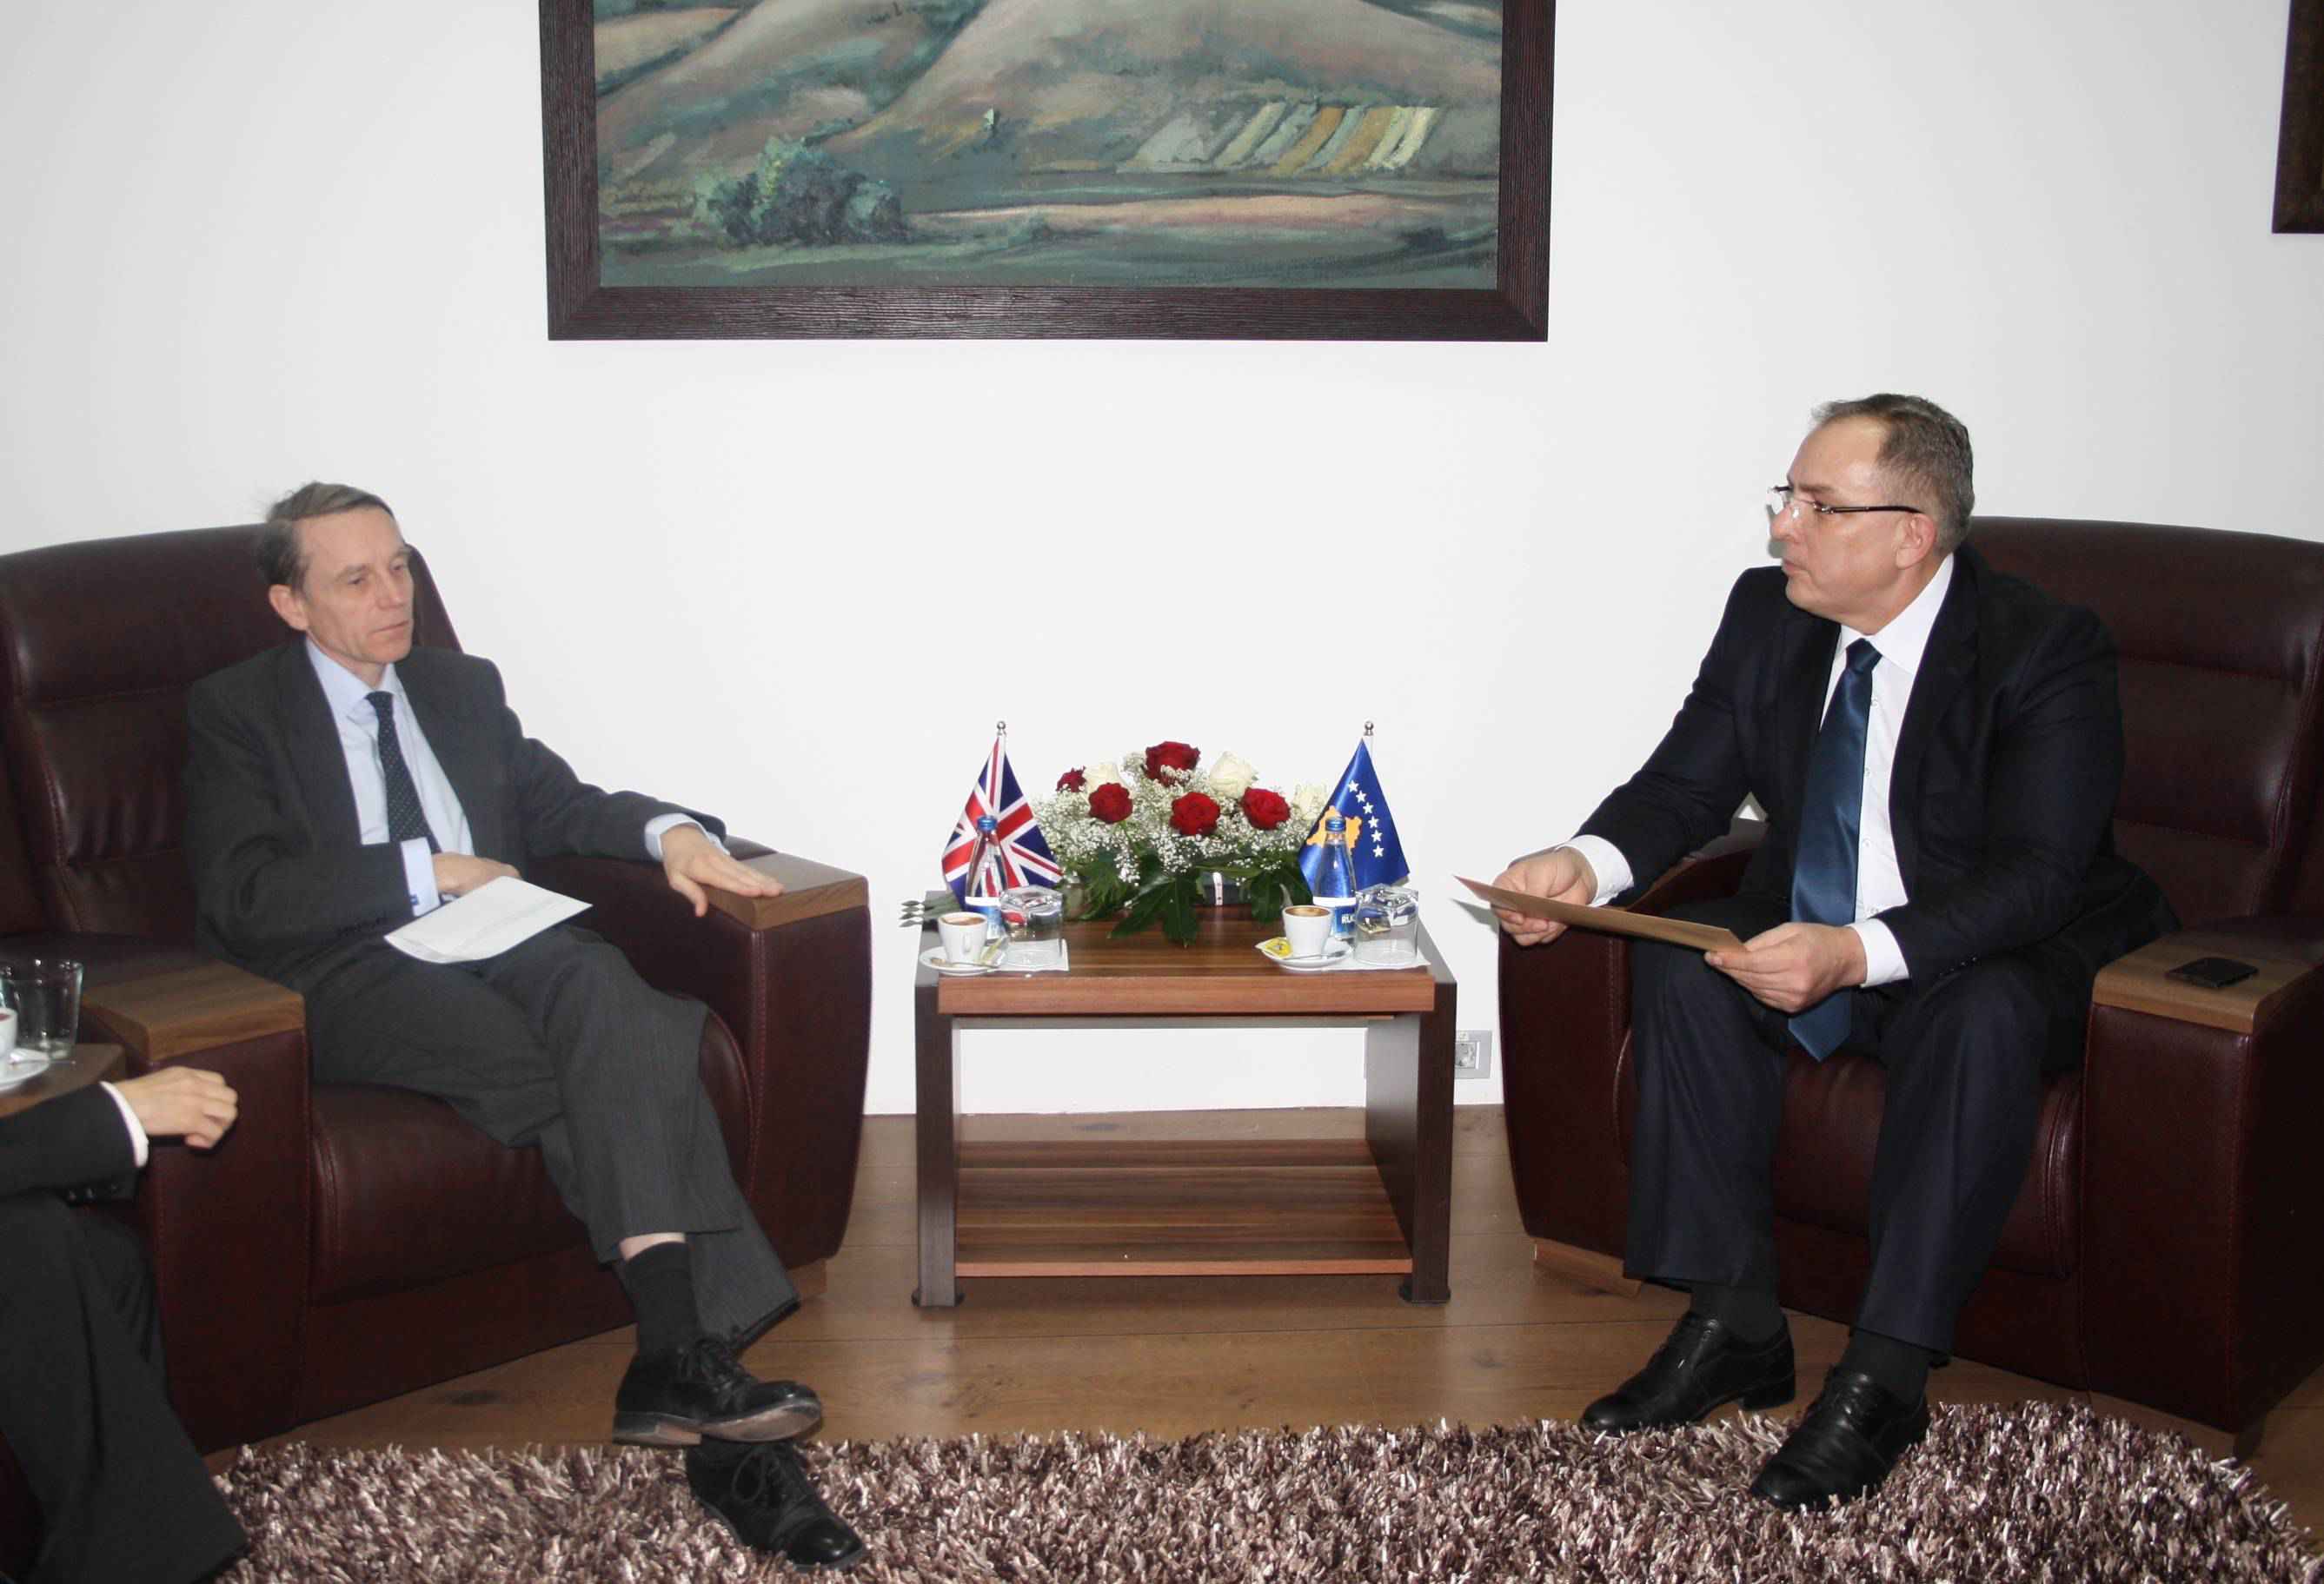 Clif ripërsëriti interesimin e Britanisë për të ndihmuar Kosovën